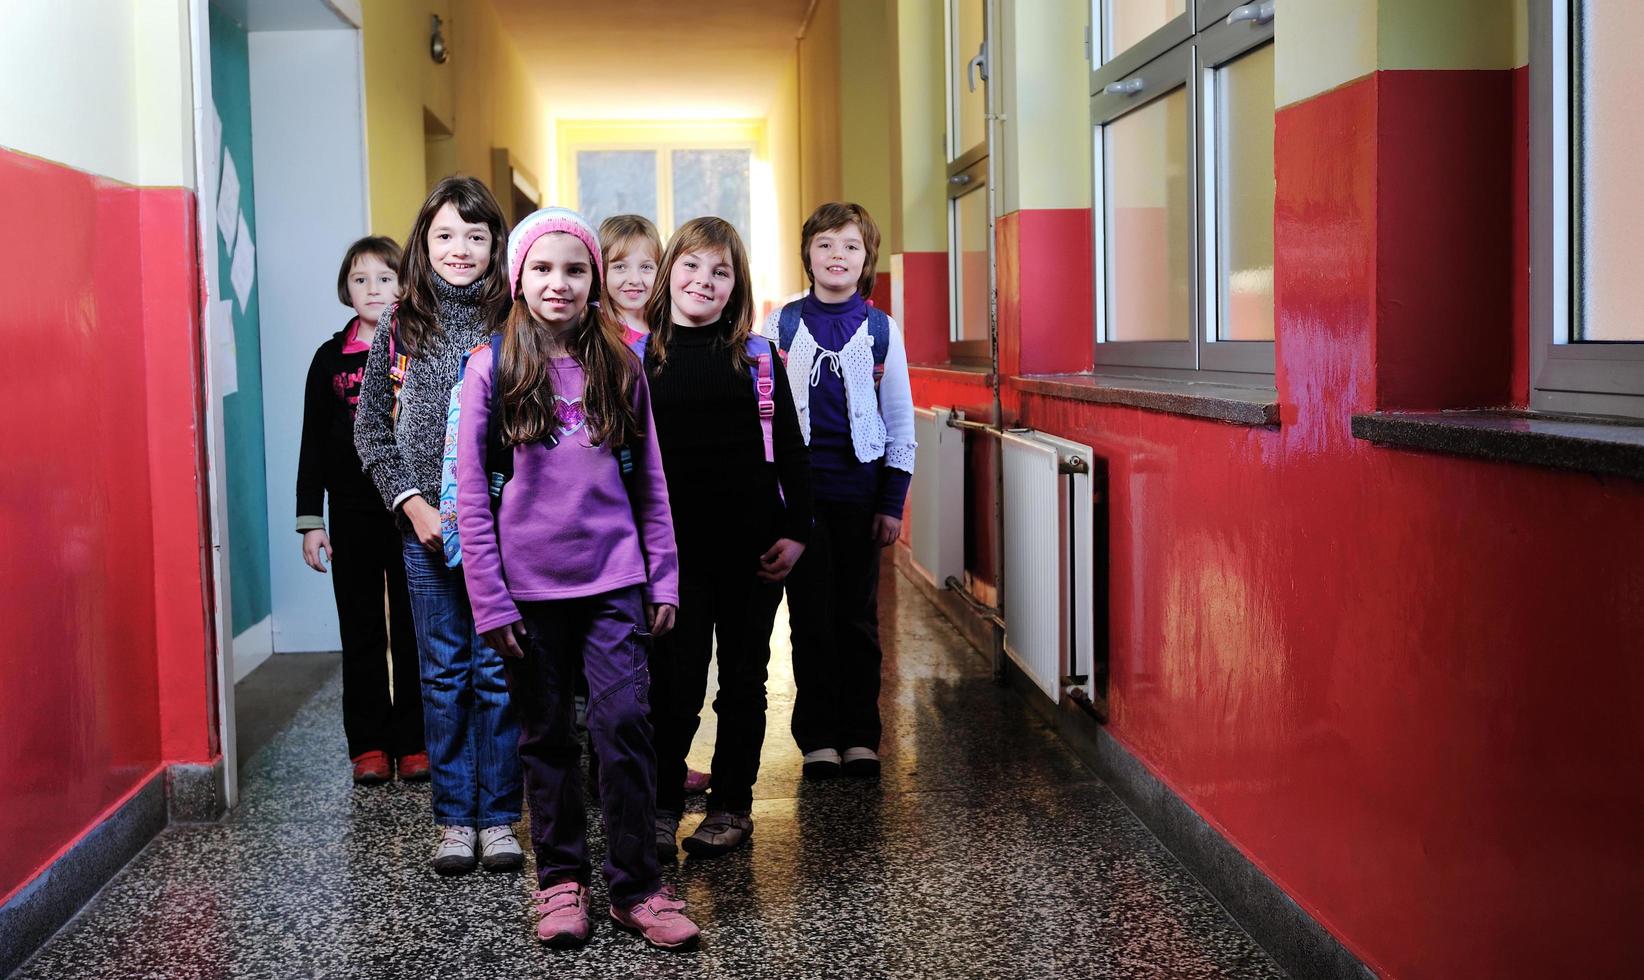 happy children group in school photo